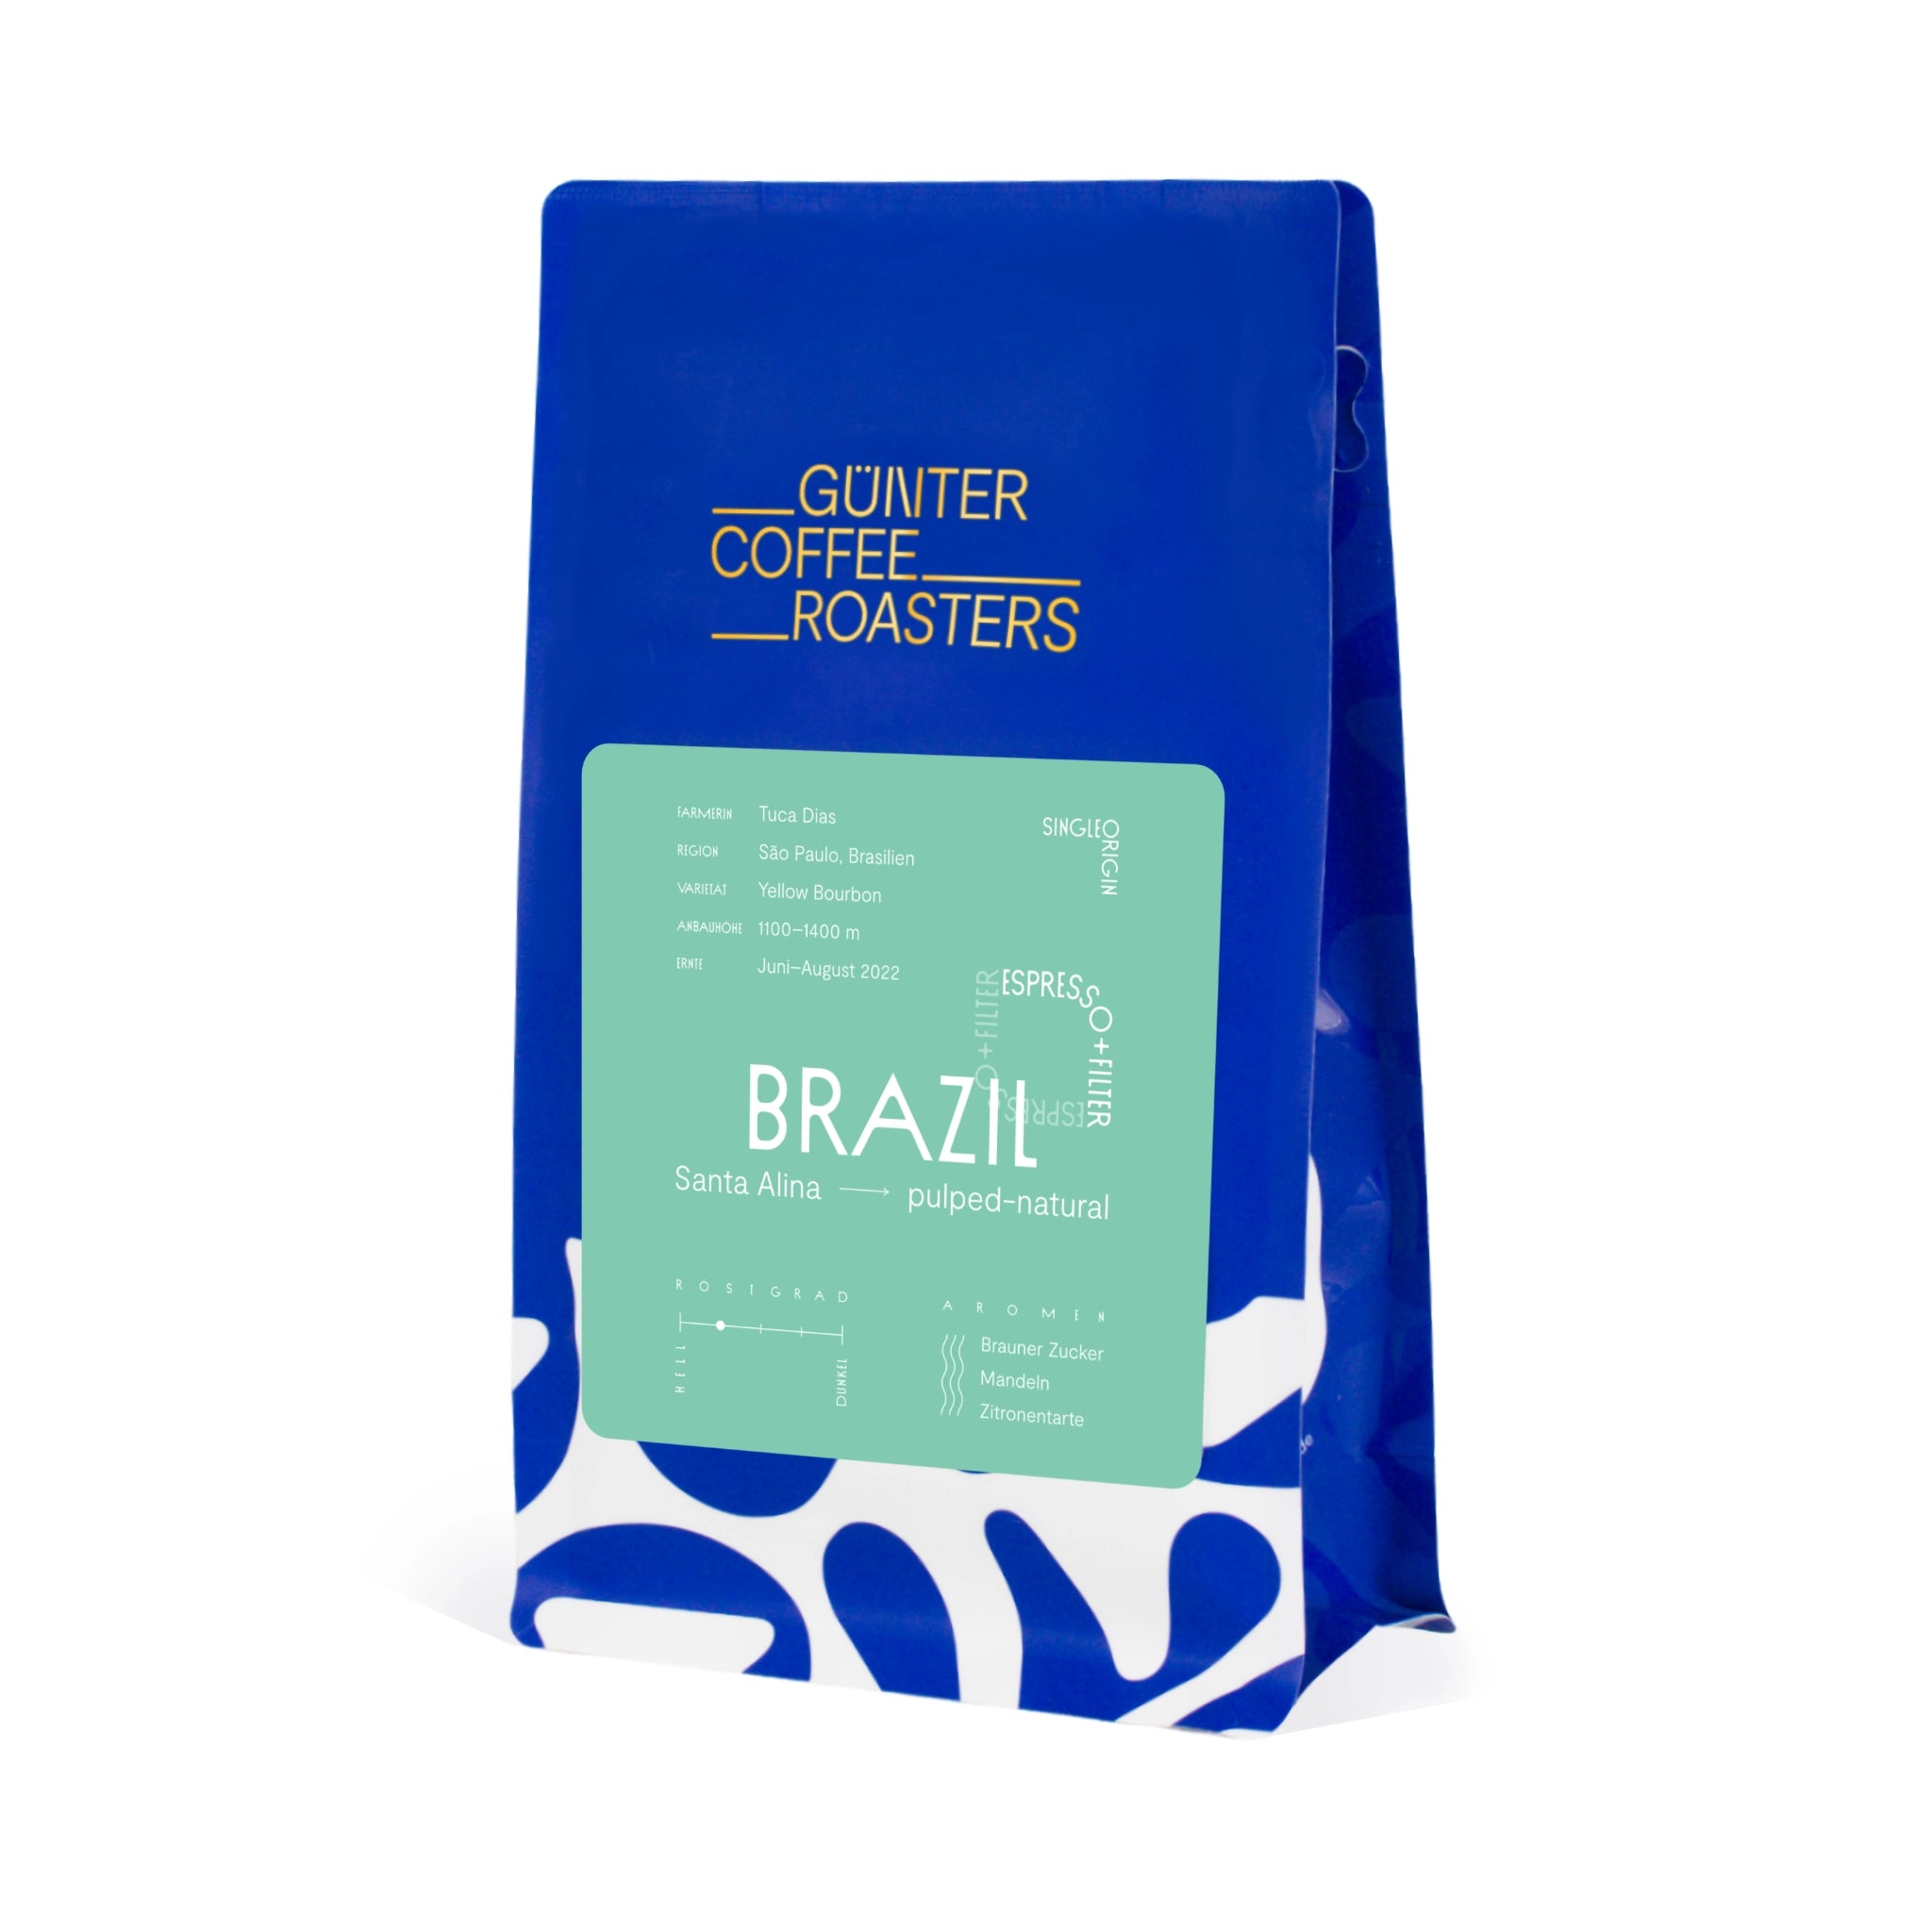 Produktverpackung Brazil Santa Alina. Kaffeebohnen für Espresso und Filterkaffee. Noten von braunem Zucker, Mandeln und Zitronentarte. Röstgrad 2 von 5. Sortenreiner Arabica-Kaffee.